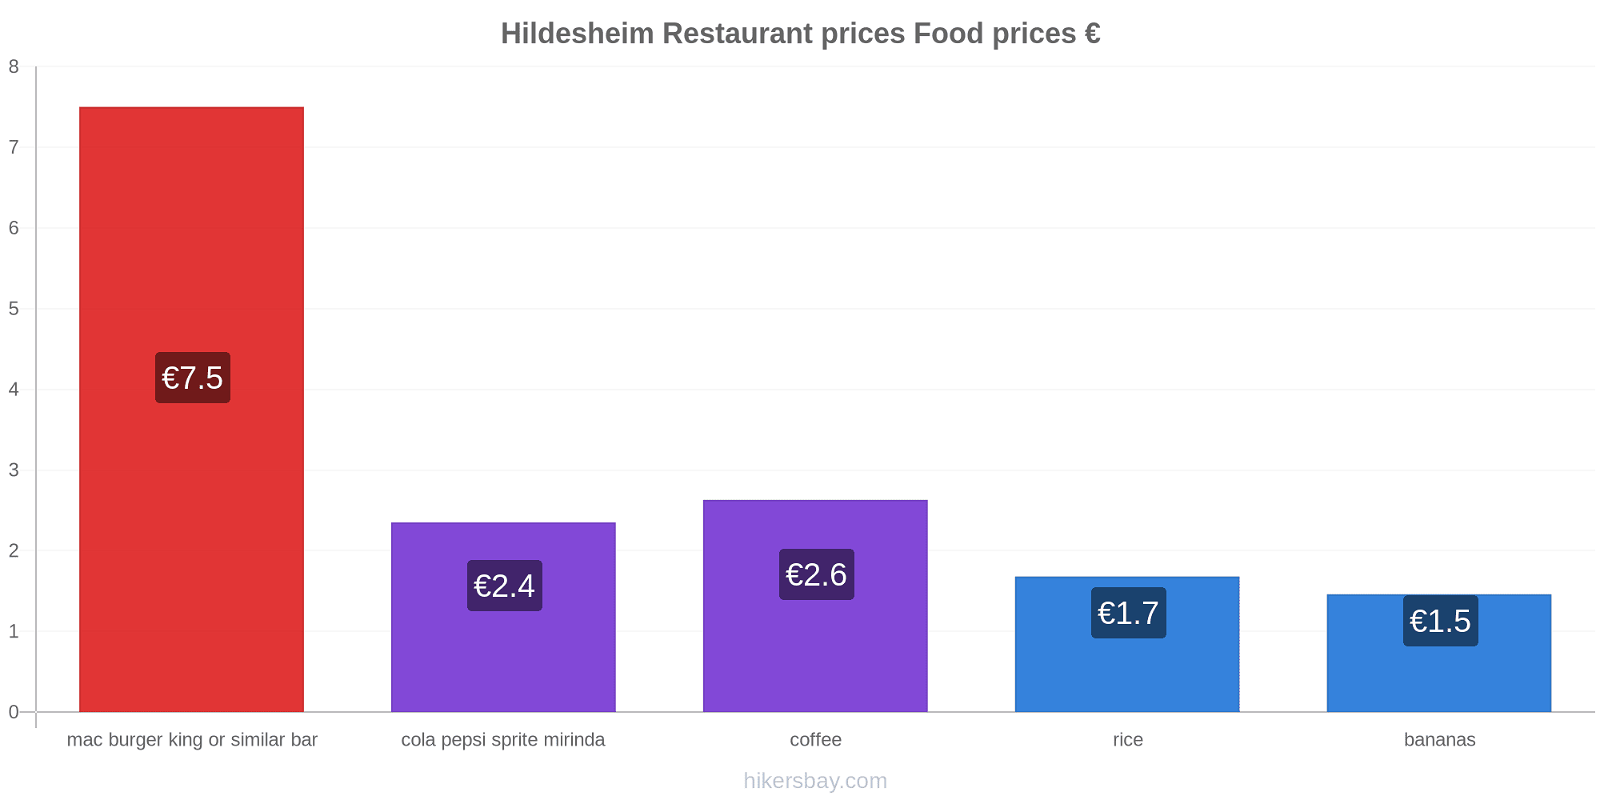 Hildesheim price changes hikersbay.com